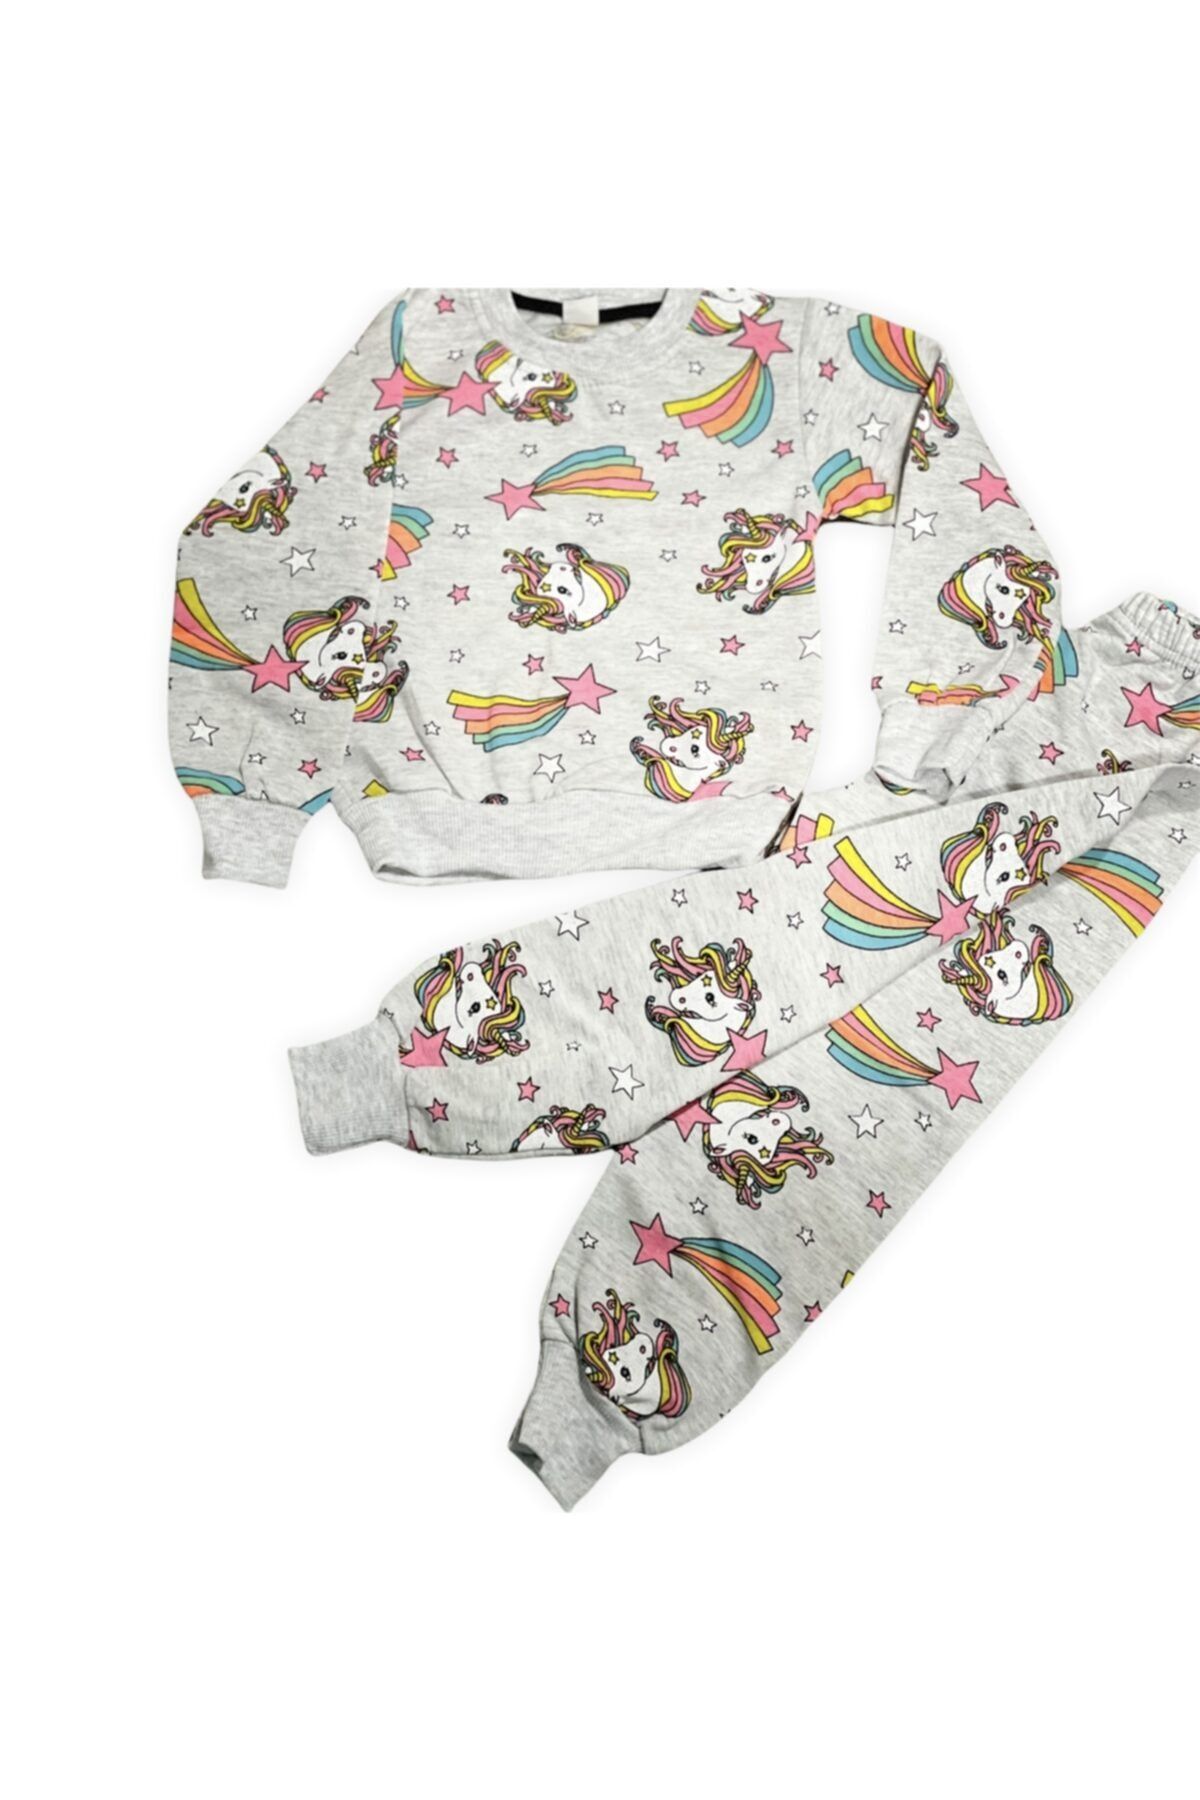 Lolliboomkids Kız Çocuk Neon Renkler Unicorn Gökkuşağı Baskı Detay Ev Giyim Pijama Takımı